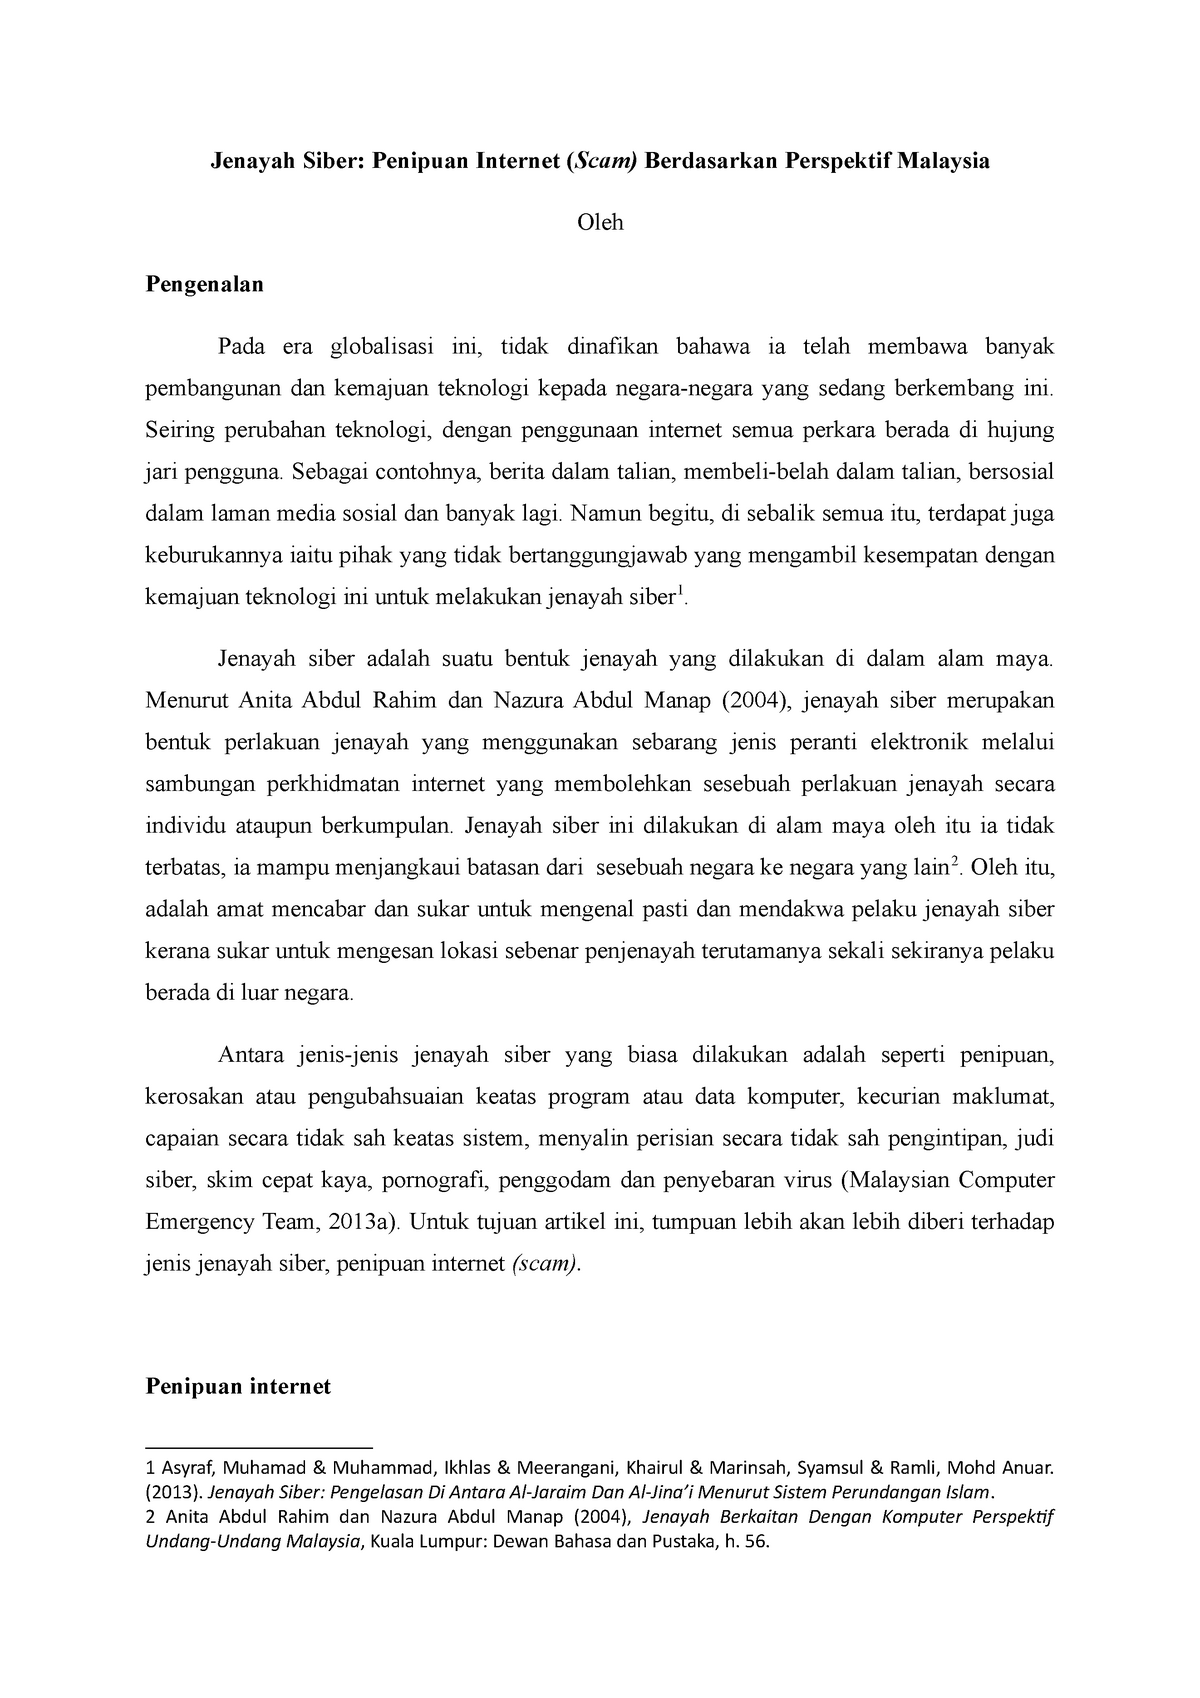 Jenayah Siber Penulisan Artikel Bahasa Melayu Undang Undang 1 Studocu